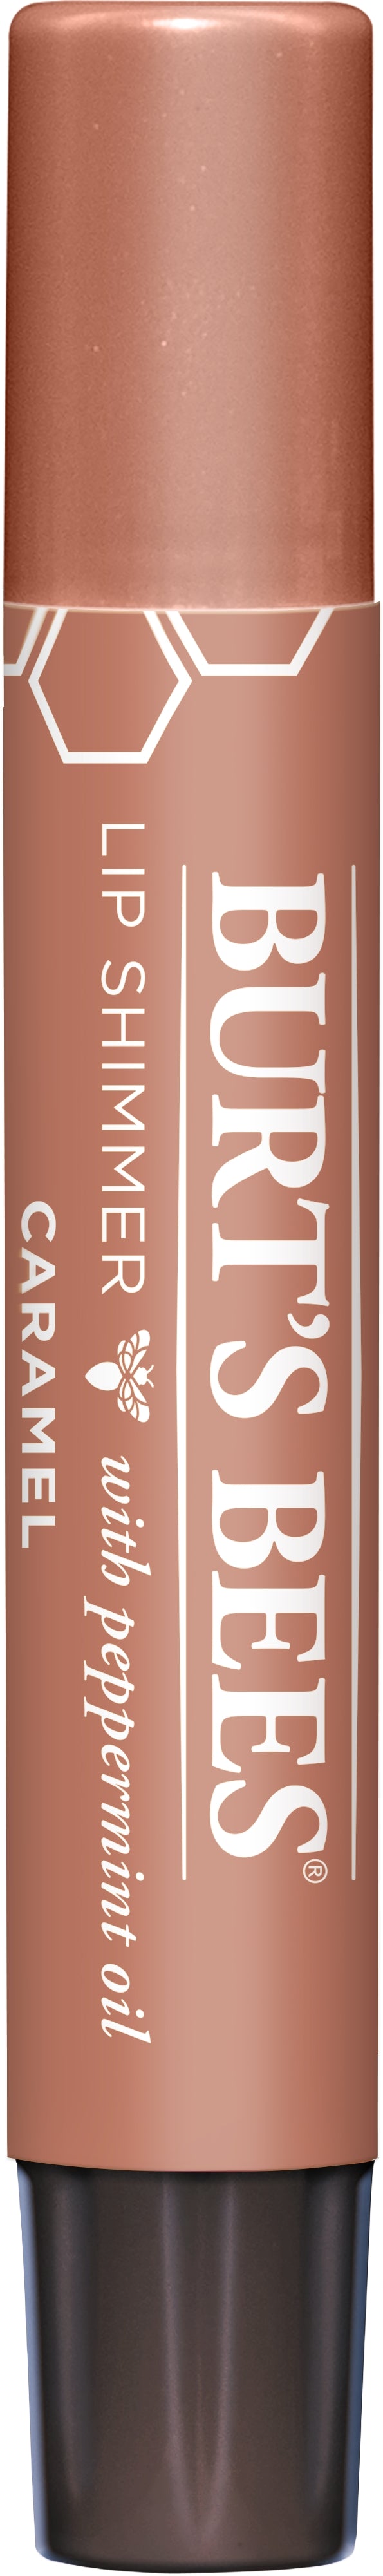 Burt's Bees Lip Shimmer 2.6 g / Caramel